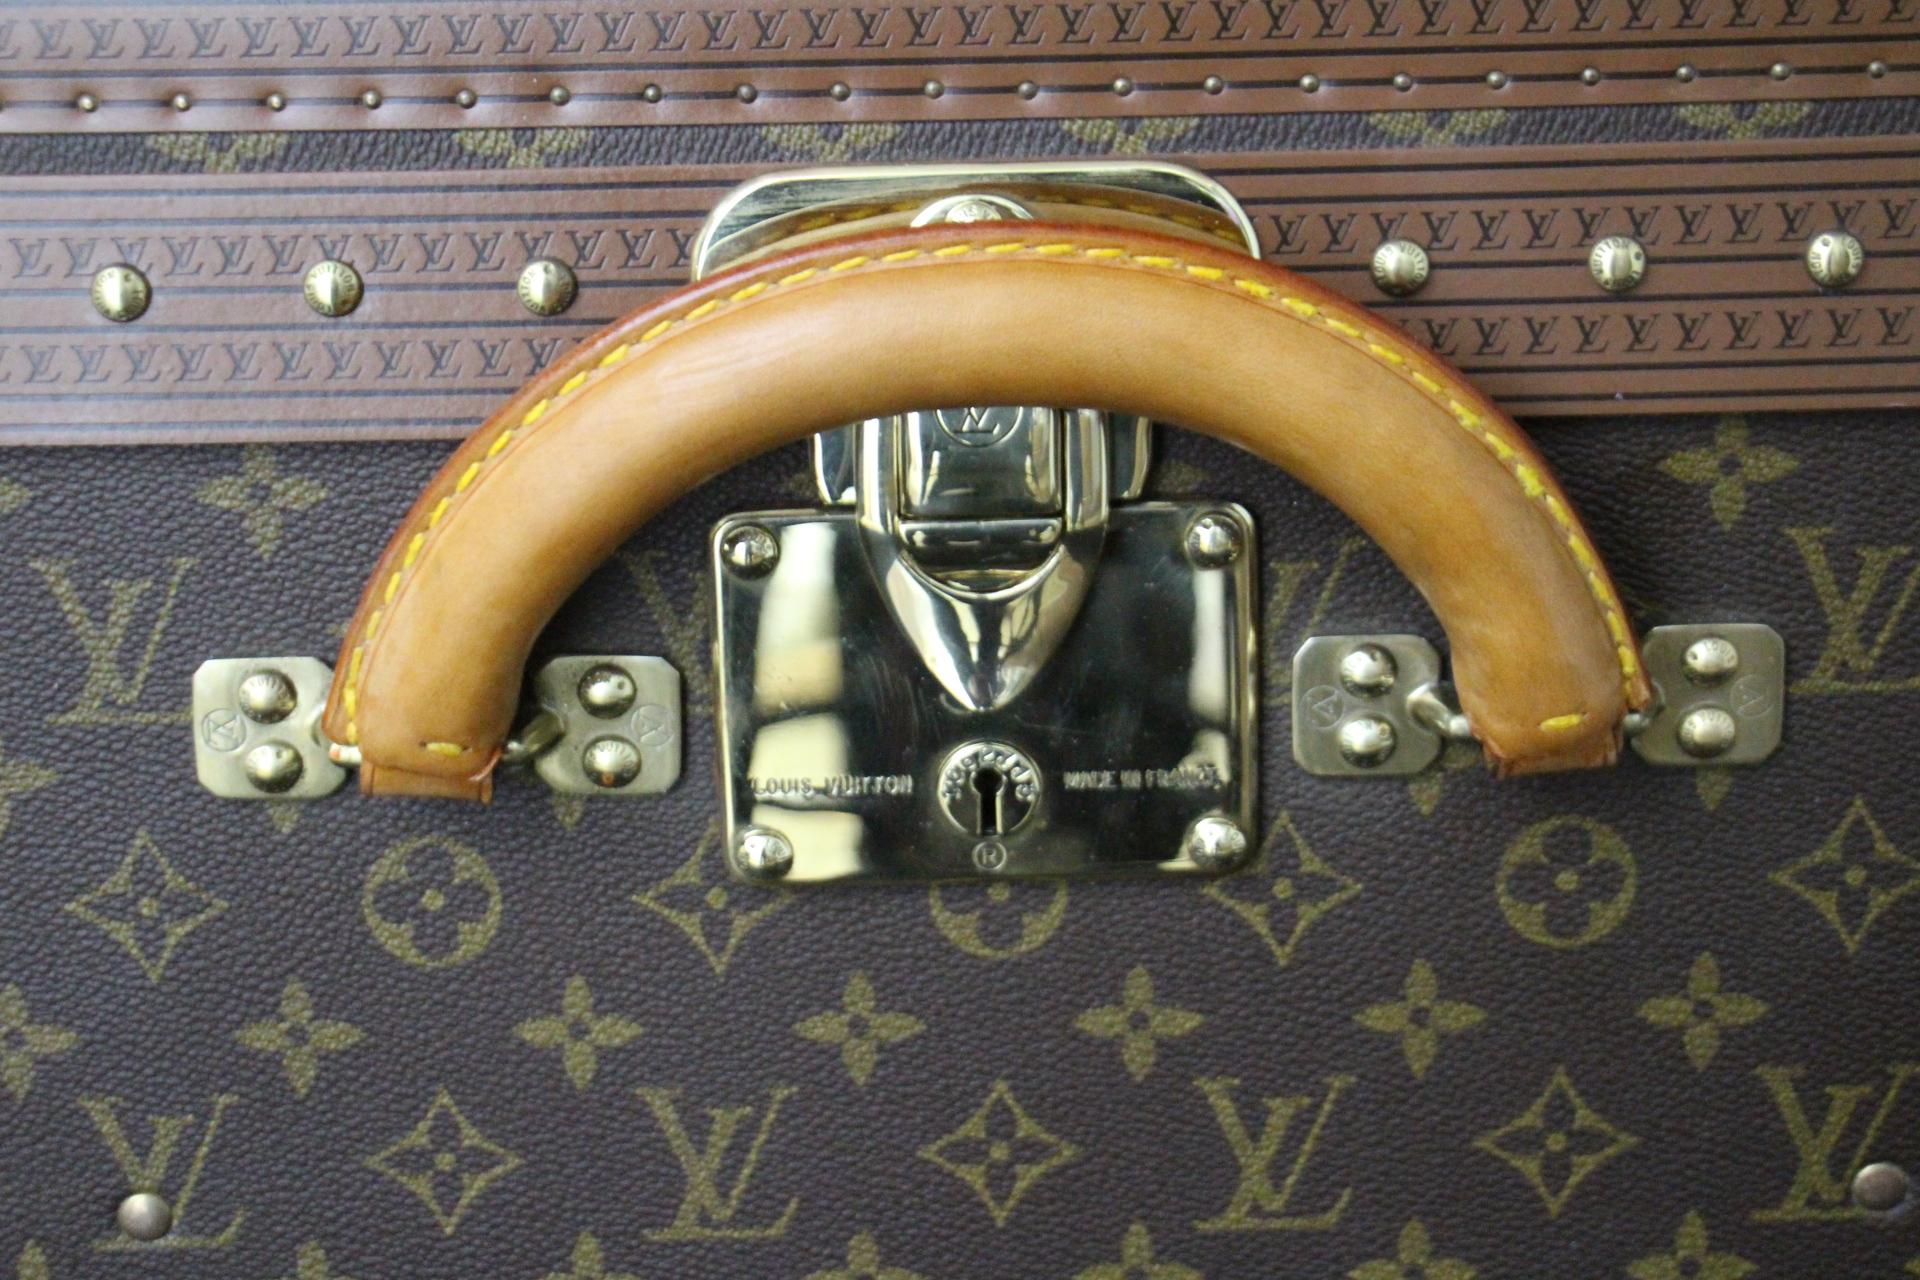  Valise Louis Vuitton, 55 Alzer valise Louis Vuitton, 55 cm 2